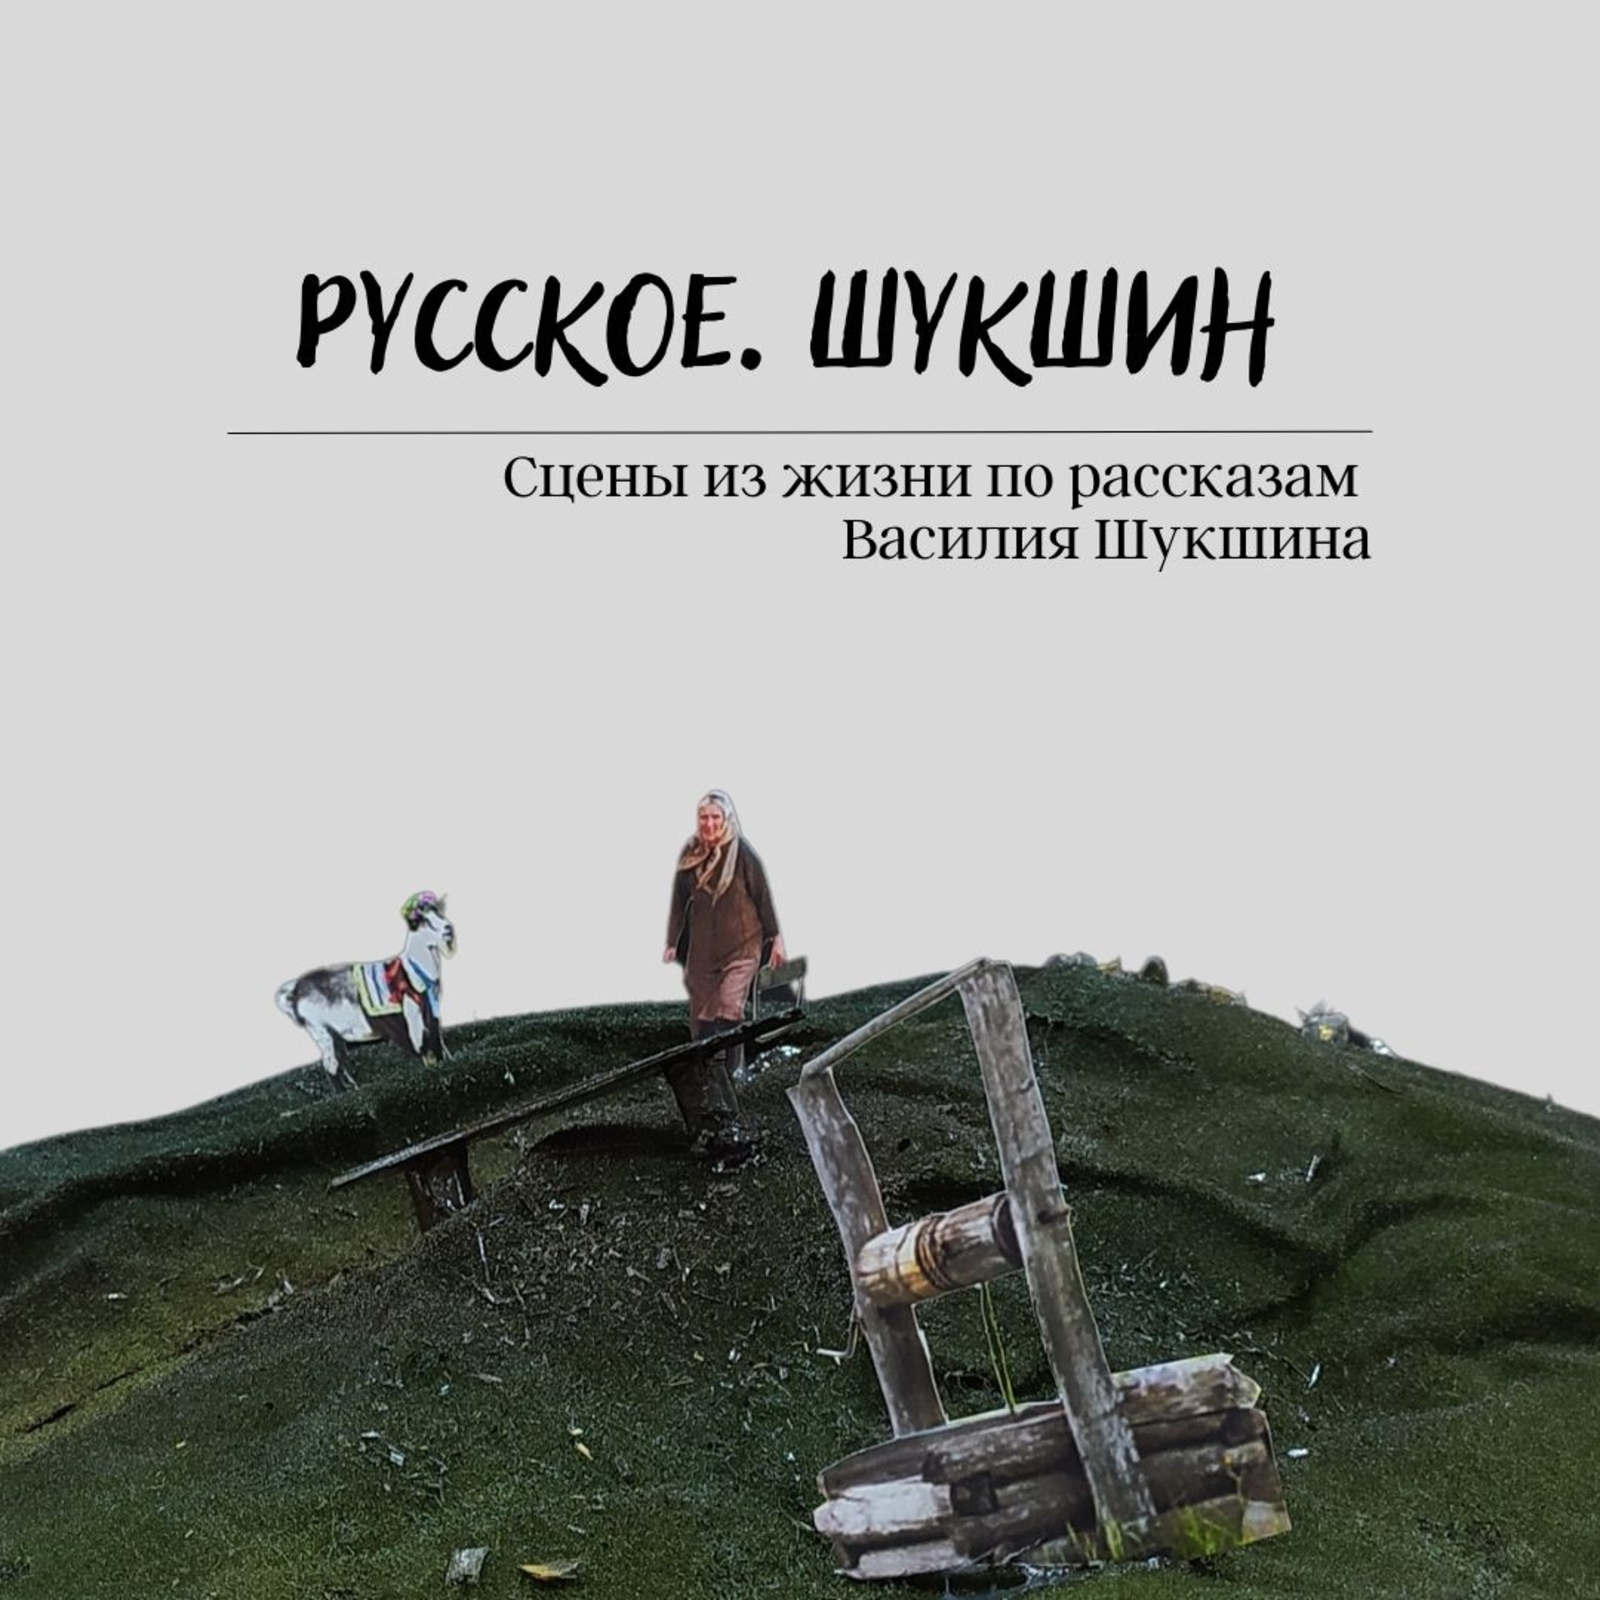 Стерлитамакский Русский драмтеатр готовит премьеру спектакля по рассказам В.Шукшина